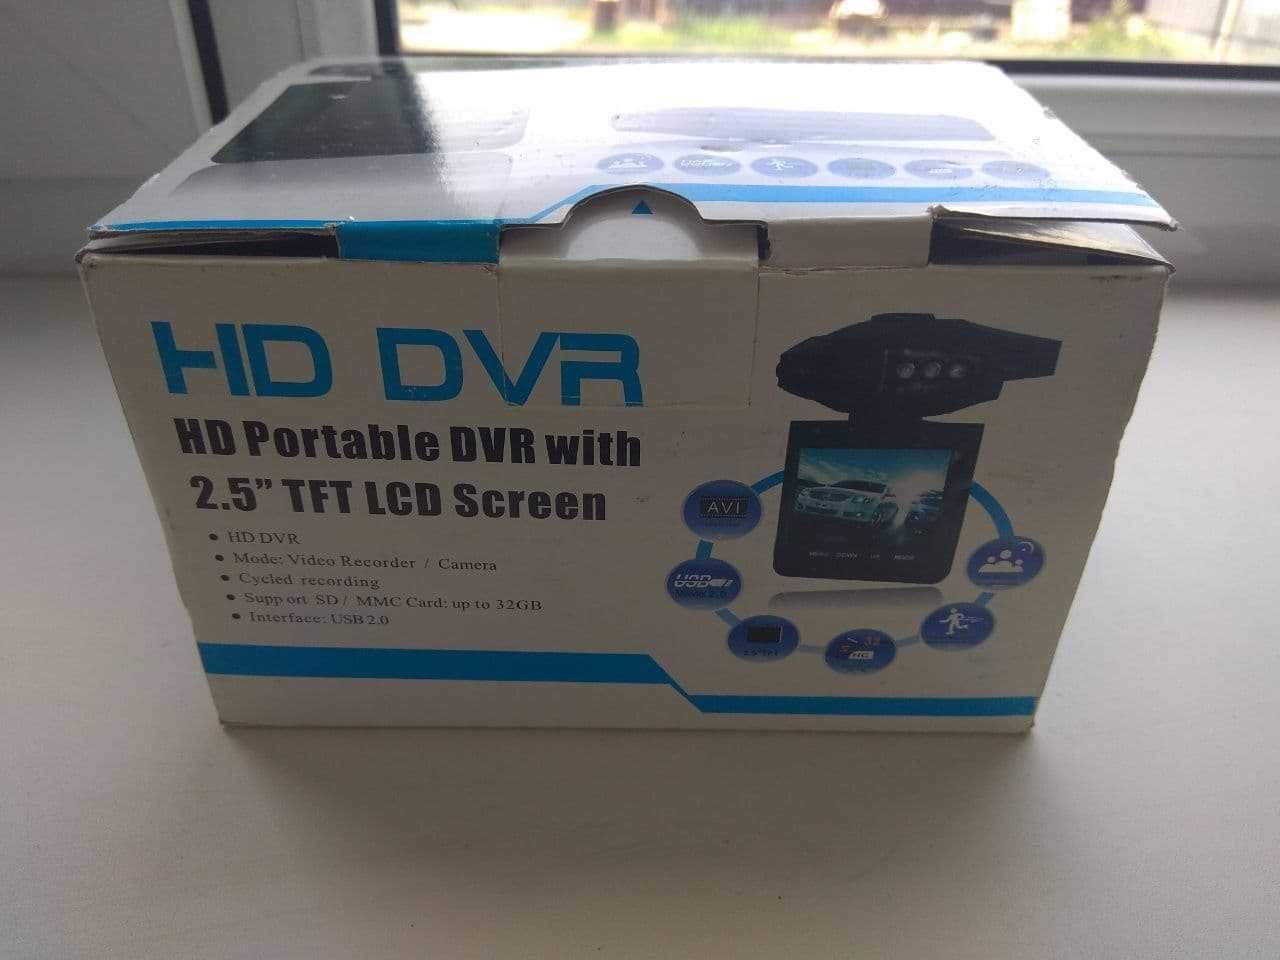 Видеорегистратор HD DVR с доставкой по Алмате + SD карта 8GB в подарок